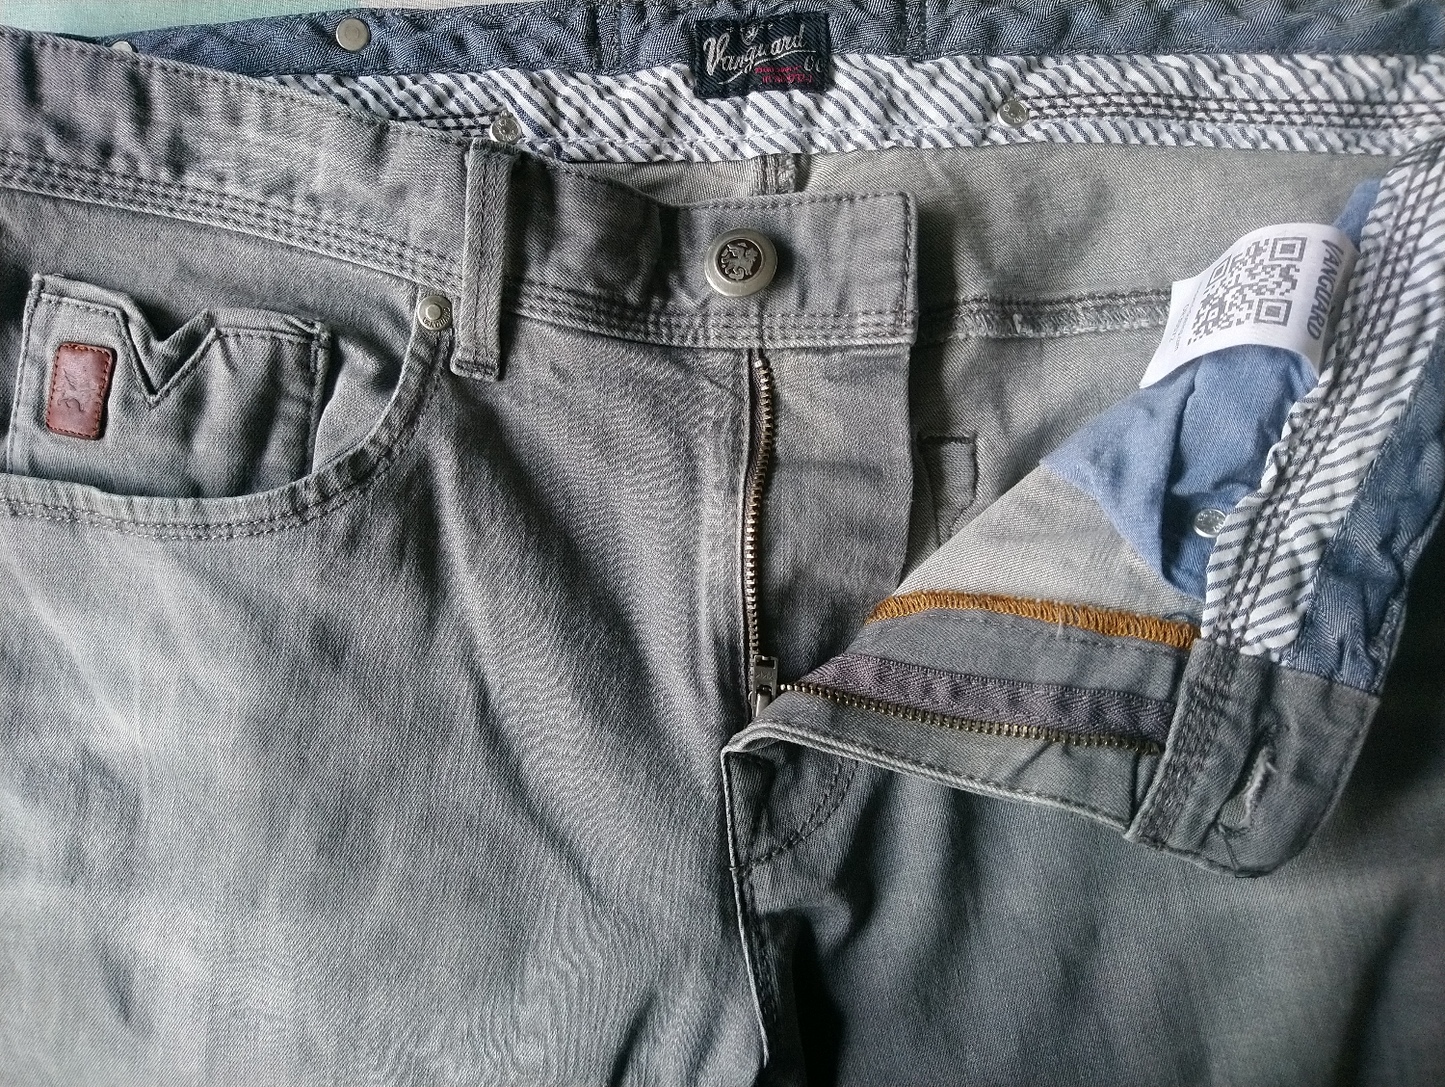 Jeans d'avanguardia. Grigio colorato. Taglia W33 - L26. (abbreviato)